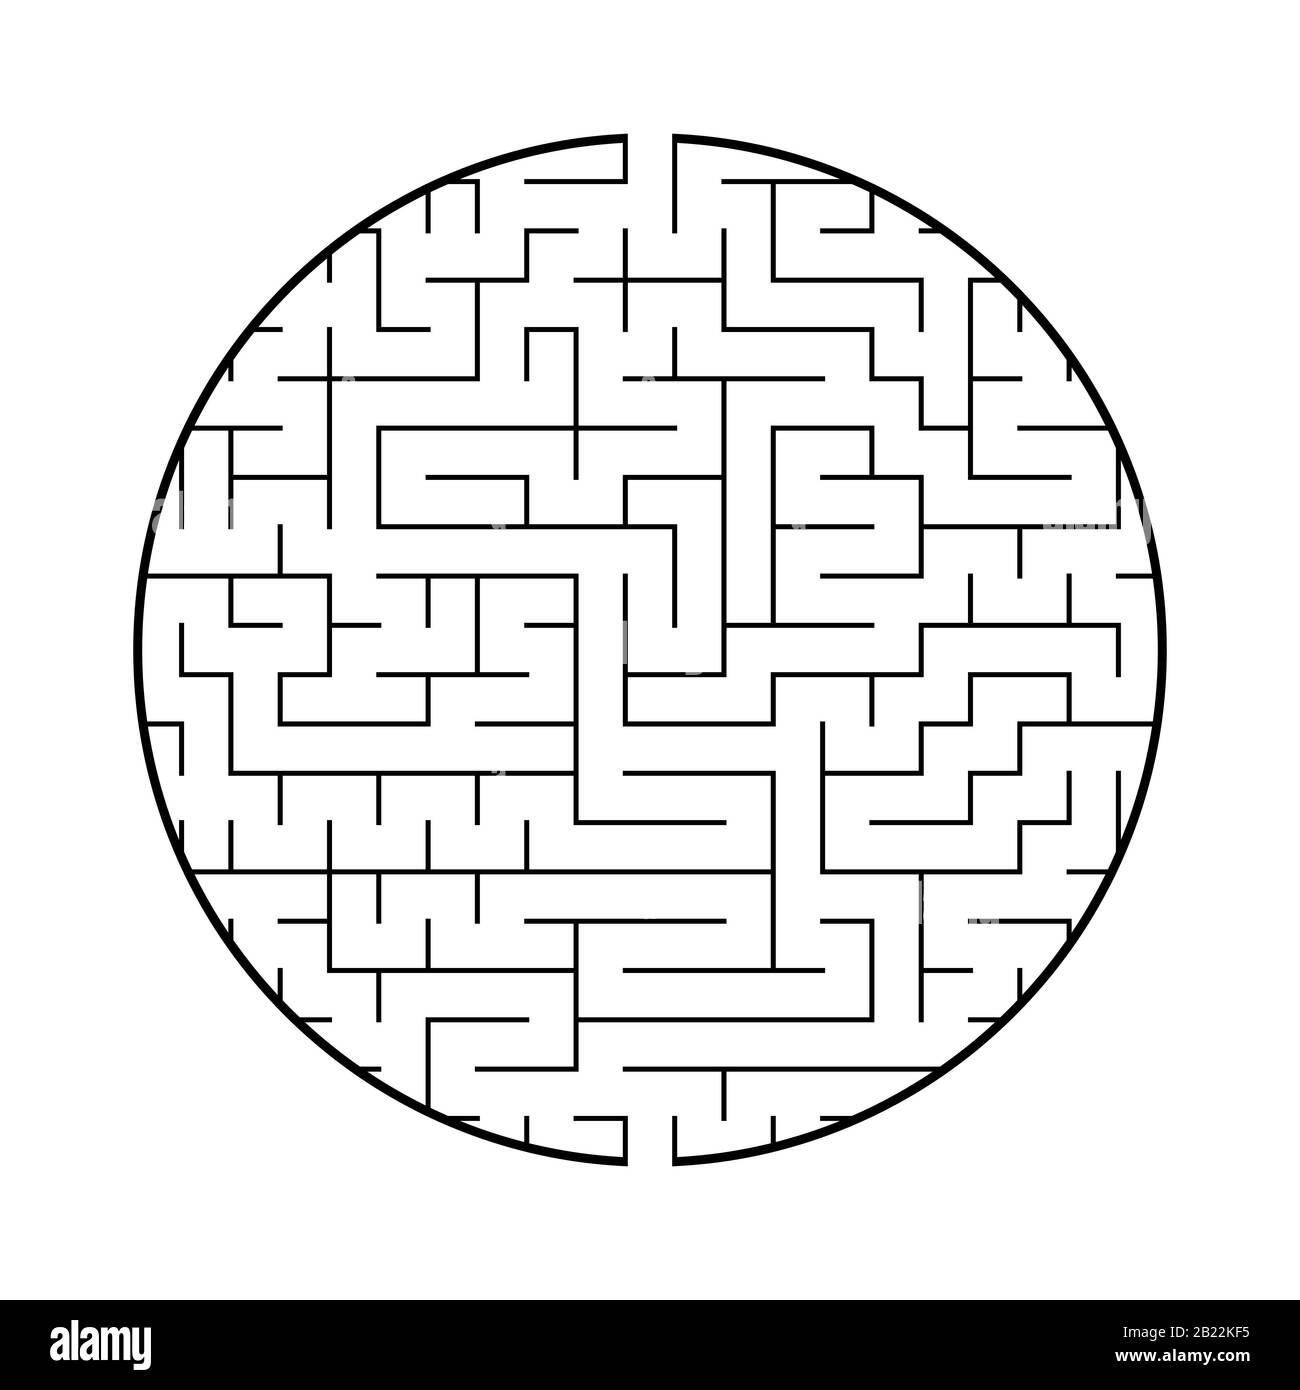 Un labyrinthe rond avec une entrée et une sortie. Illustration vectorielle plate simple isolée sur fond blanc. Avec un endroit pour votre image Illustration de Vecteur